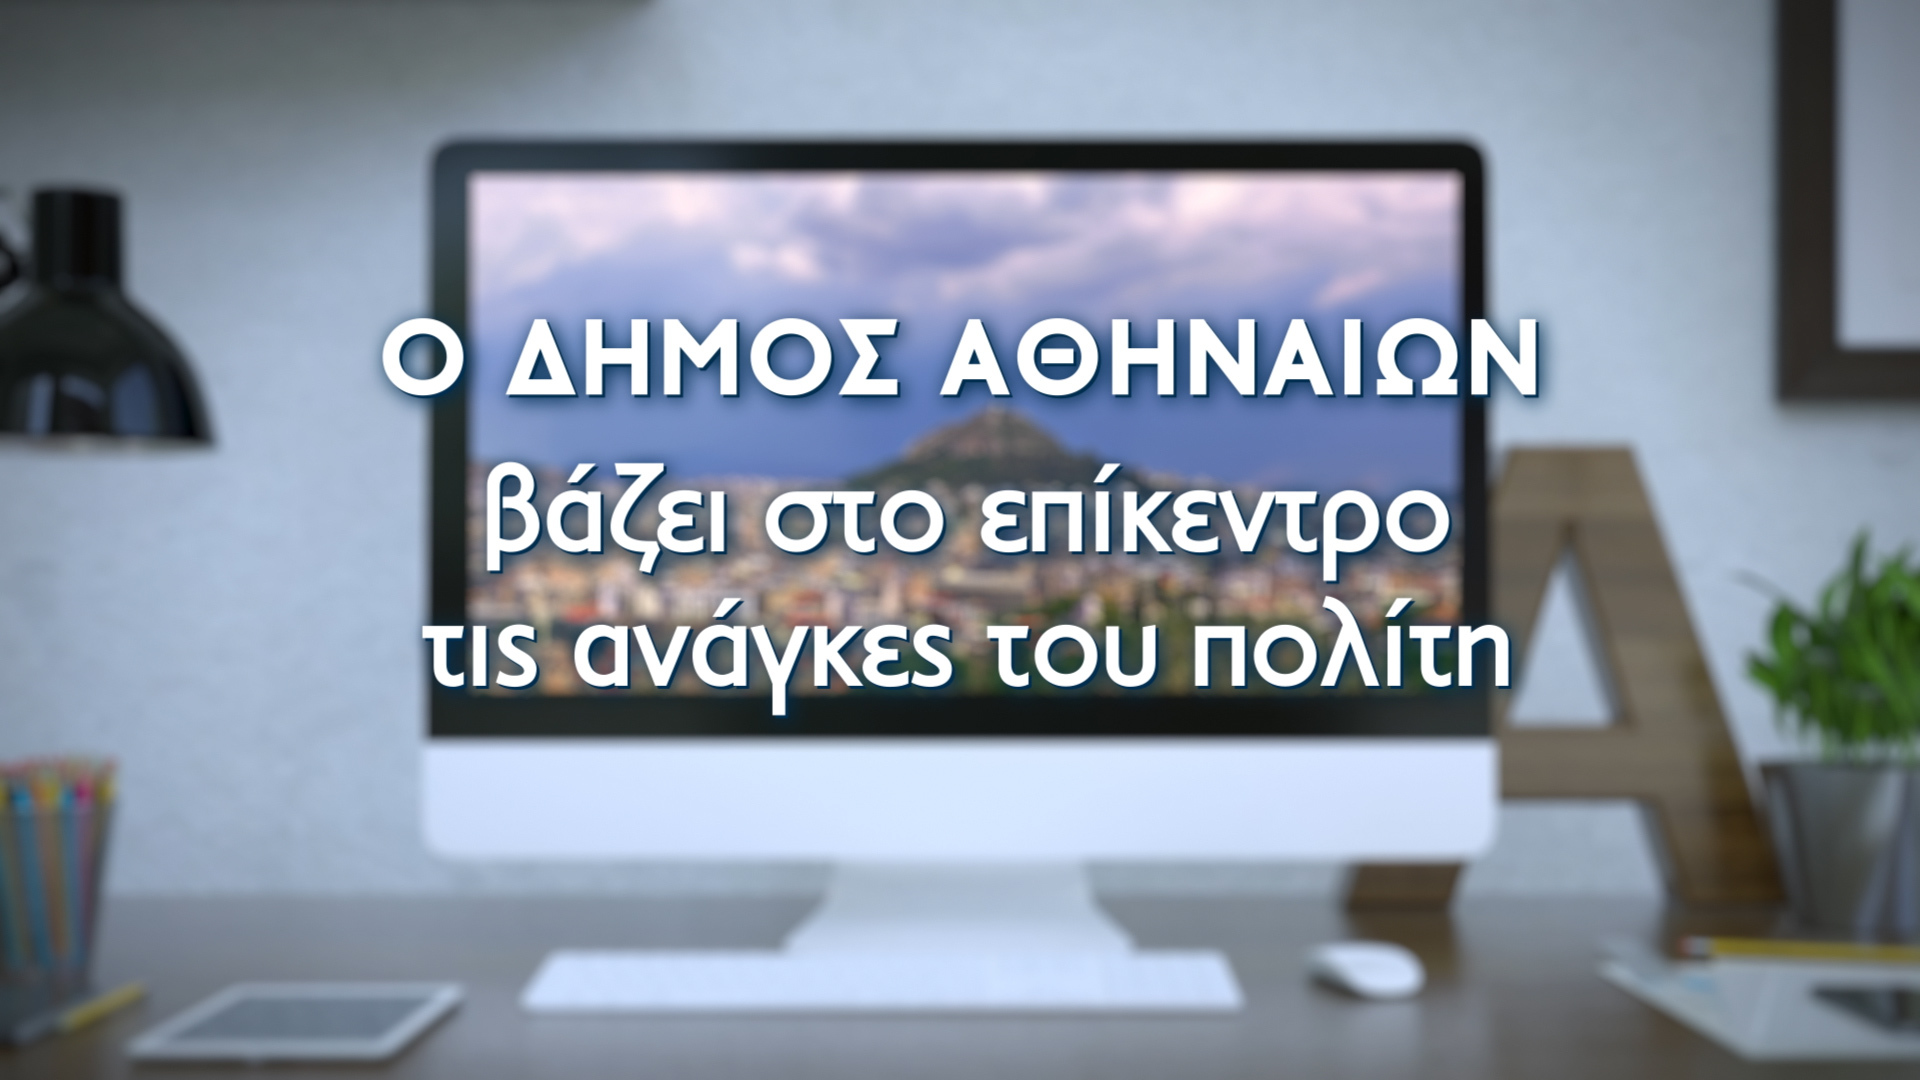 Ο Δήμος Αθηναίων παρουσιάζει το νέο λειτουργικό και εύχρηστο portal cityofathens.gr - ΕΛΛΑΔΑ